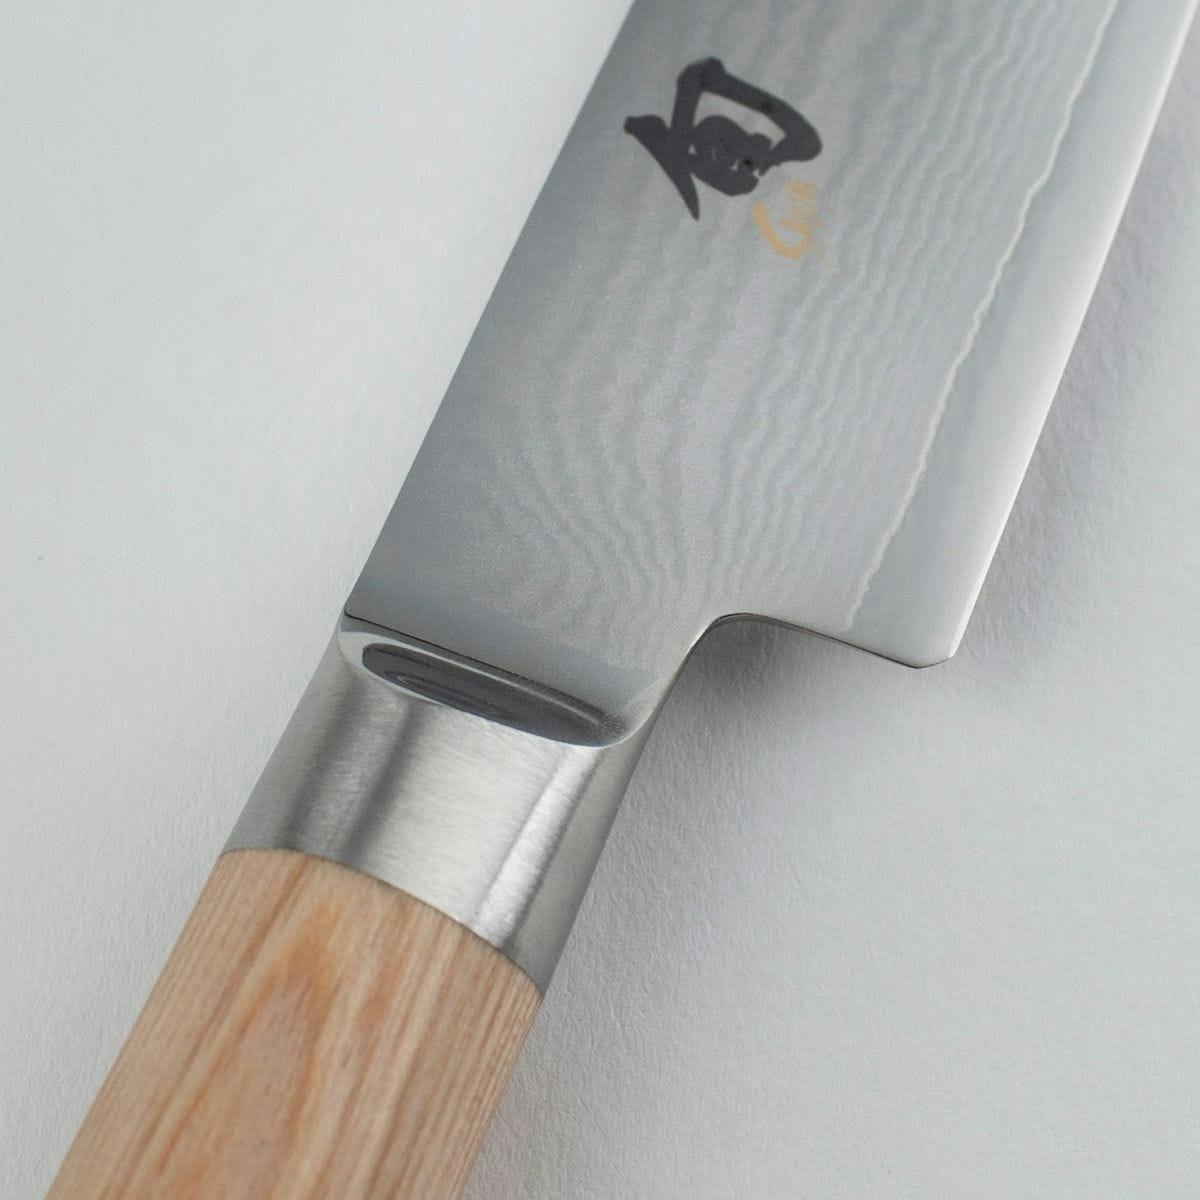 Shun Narukami 10 inch Chef’s Knife